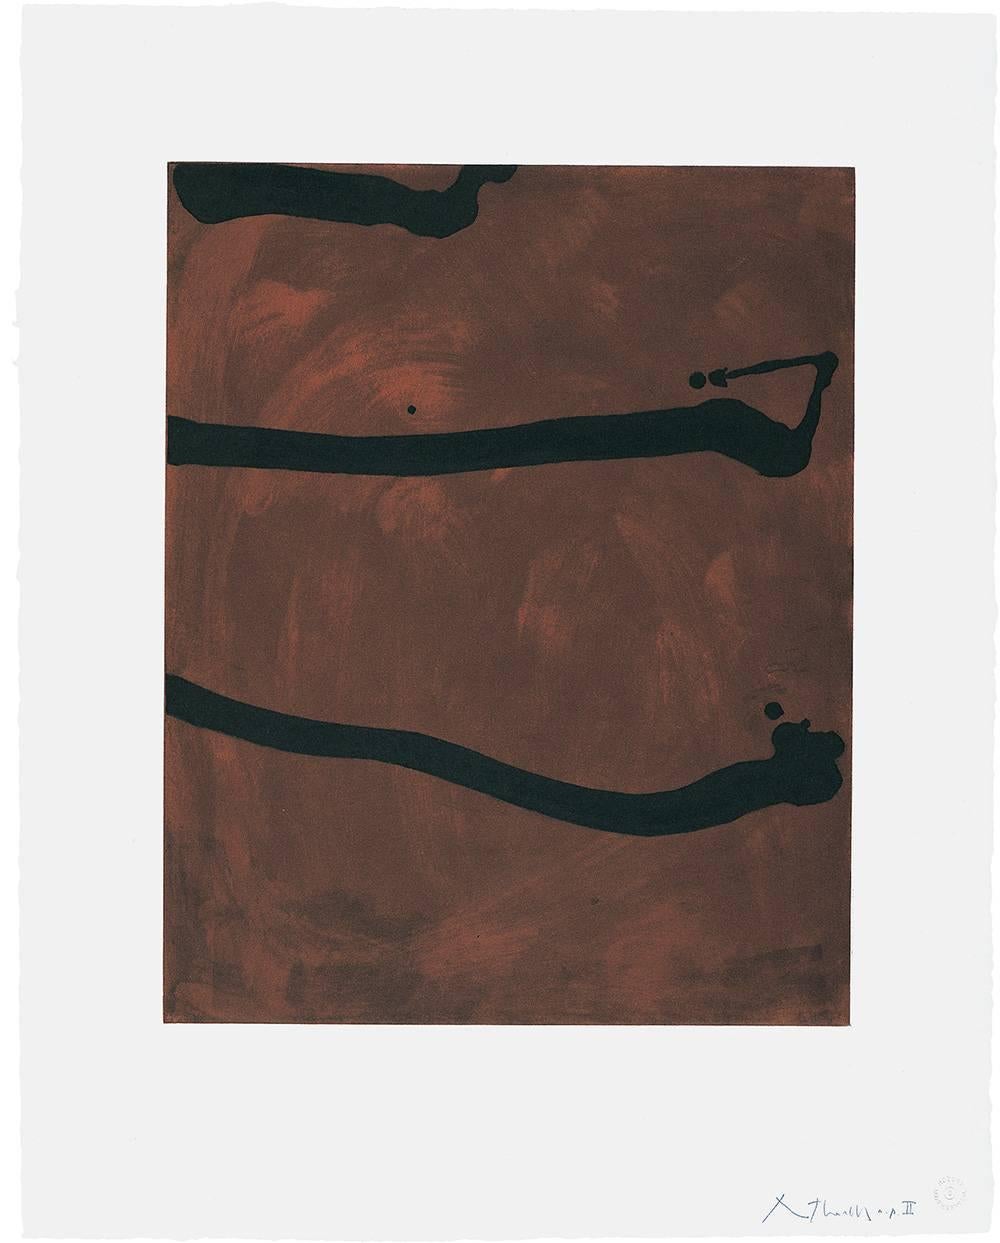 Abstract Print Robert Motherwell - Sans titre 